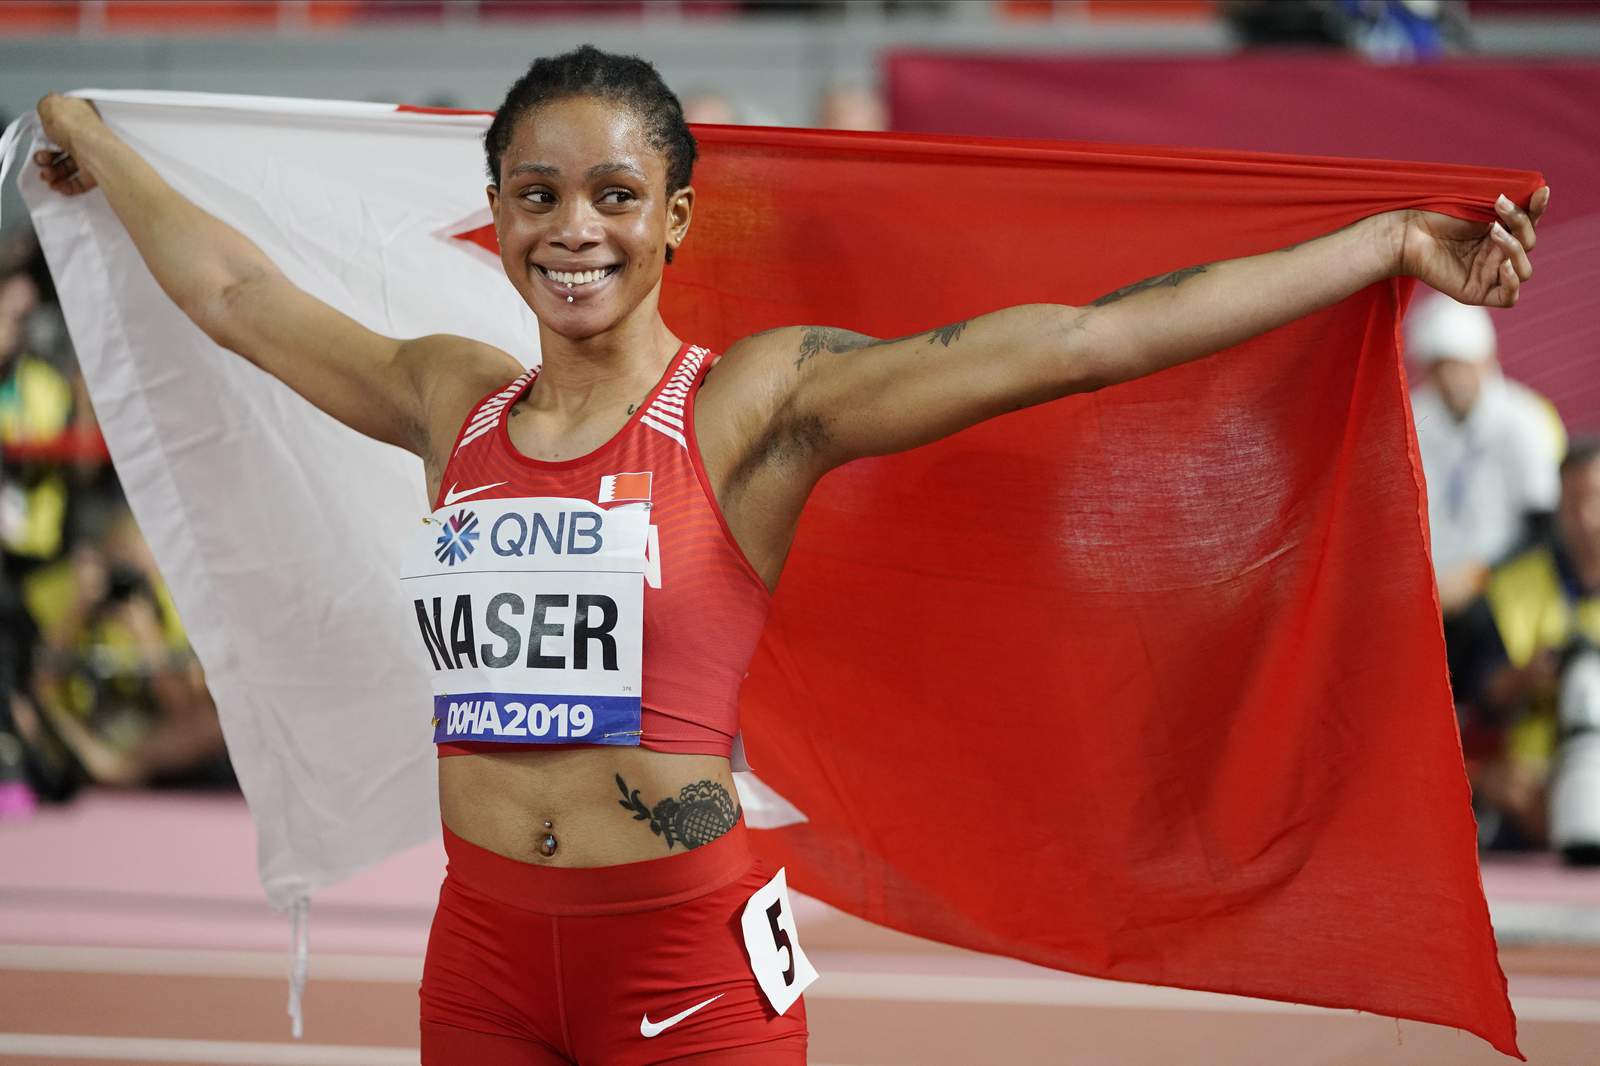 Naser was under investigation when she won world 400 gold